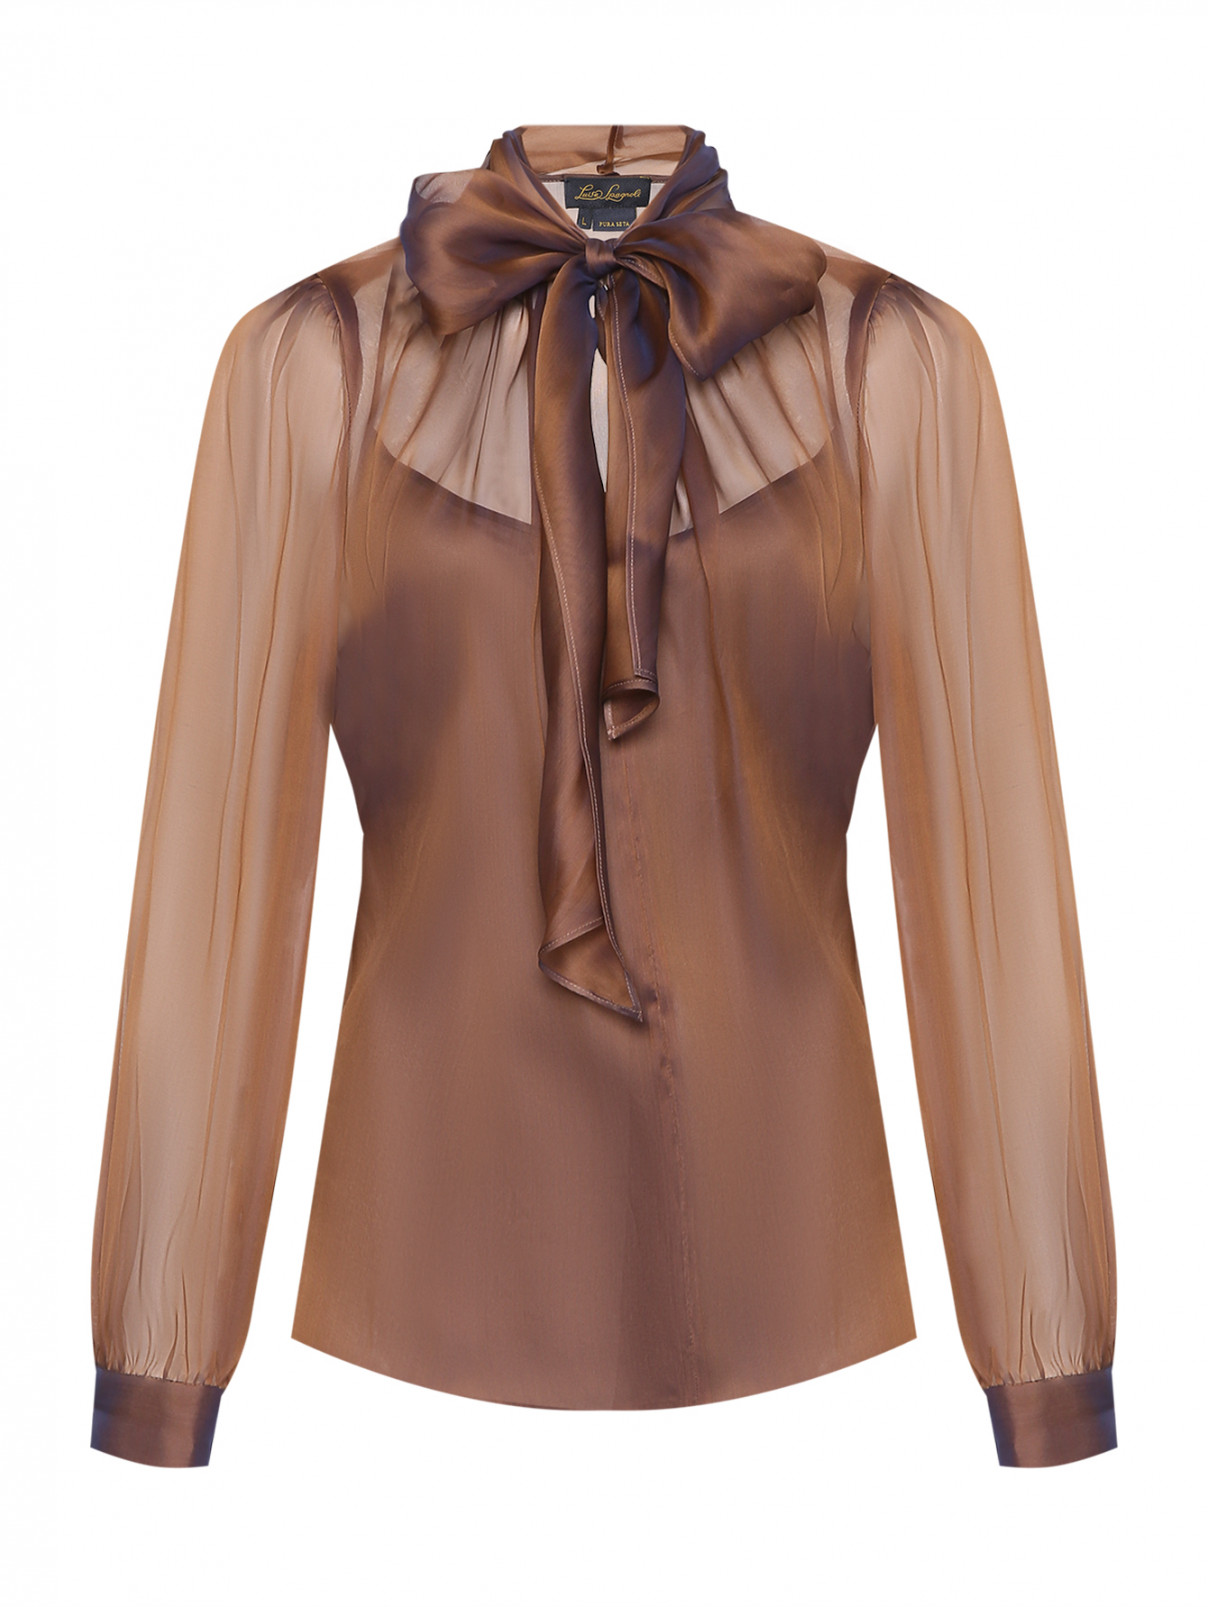 Полупрозрачная блуза из шелка с бантом Luisa Spagnoli  –  Общий вид  – Цвет:  Мультиколор